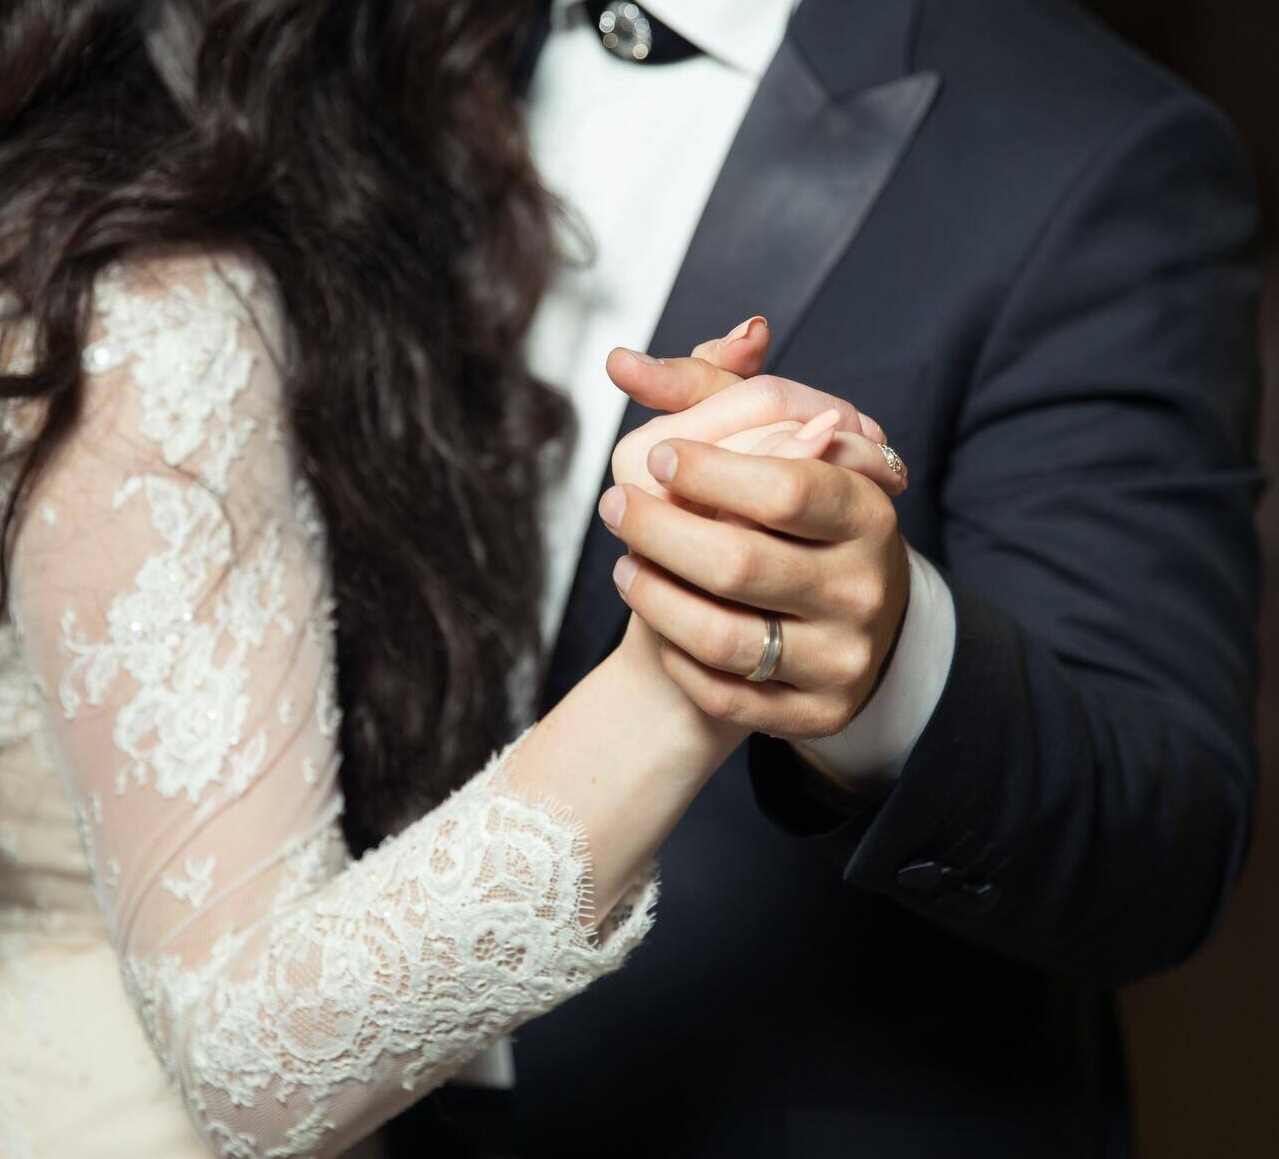 Giá cả tăng cao khiến nhiều người Mỹ 'ngại' tham dự đám cưới